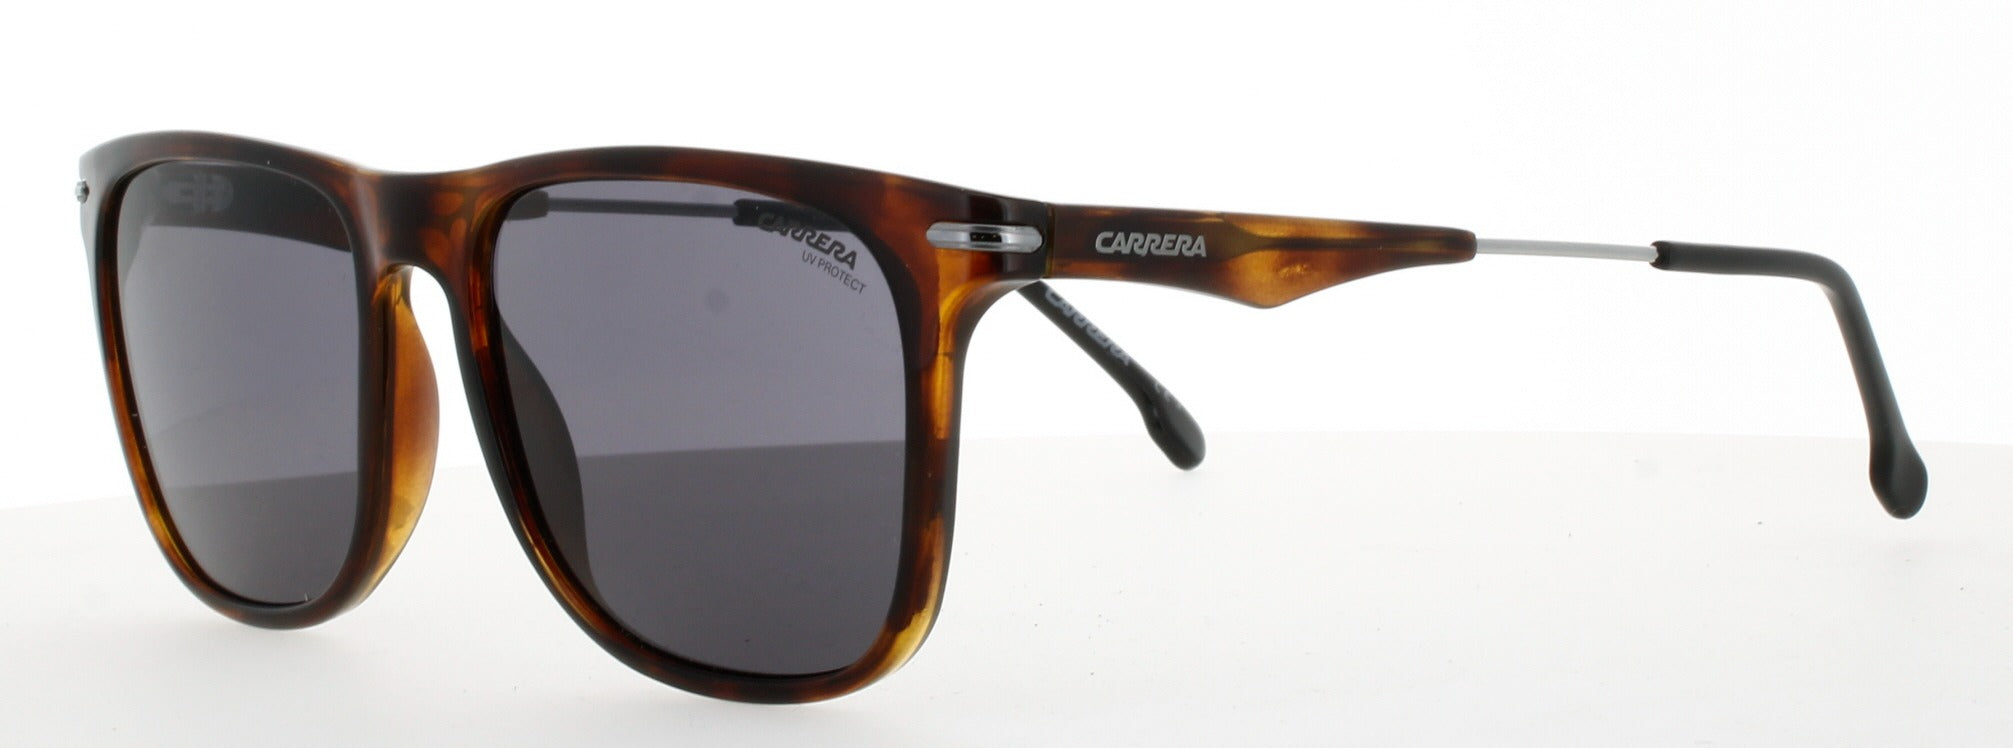 Picture of Carrera Sunglasses 276/S